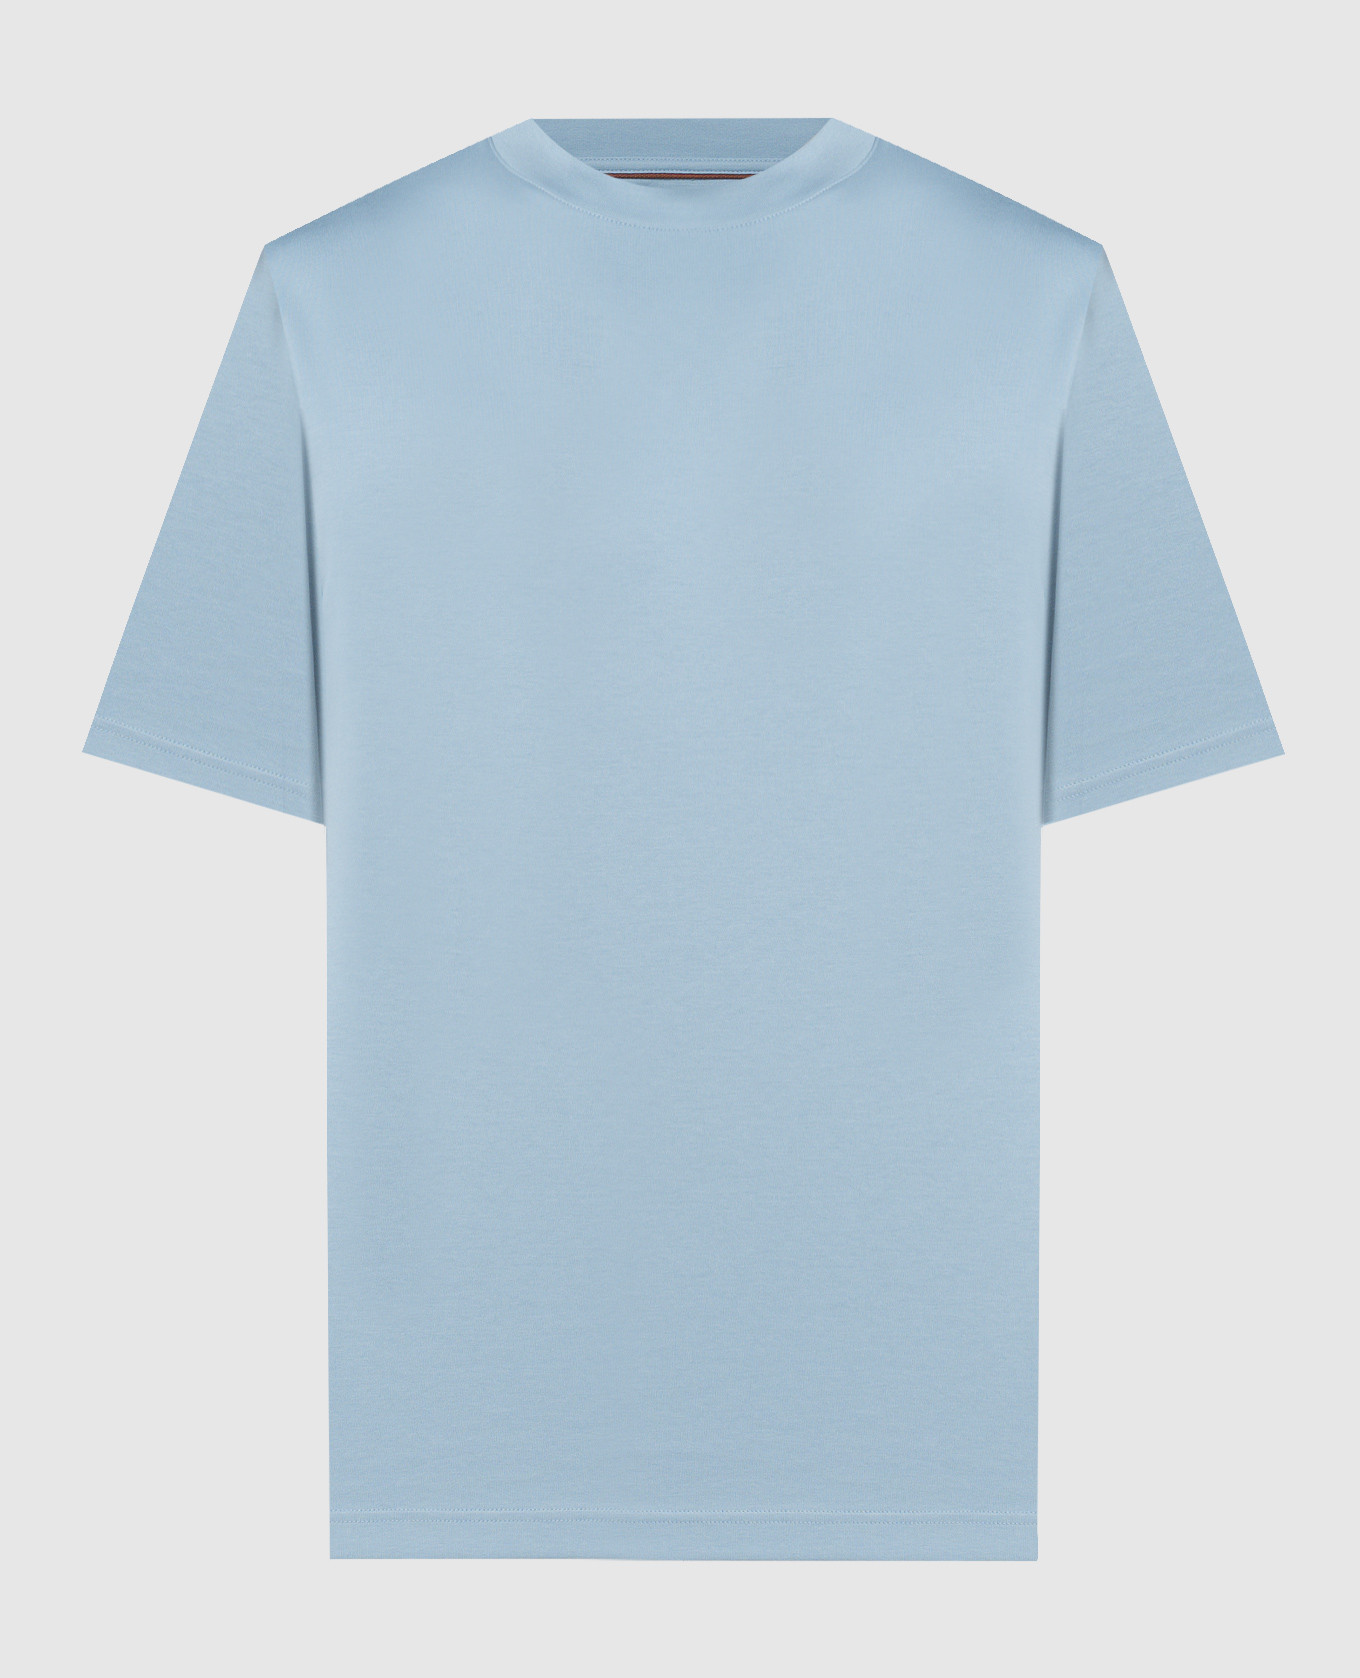 Голубая футболка с вышивкой логотипа